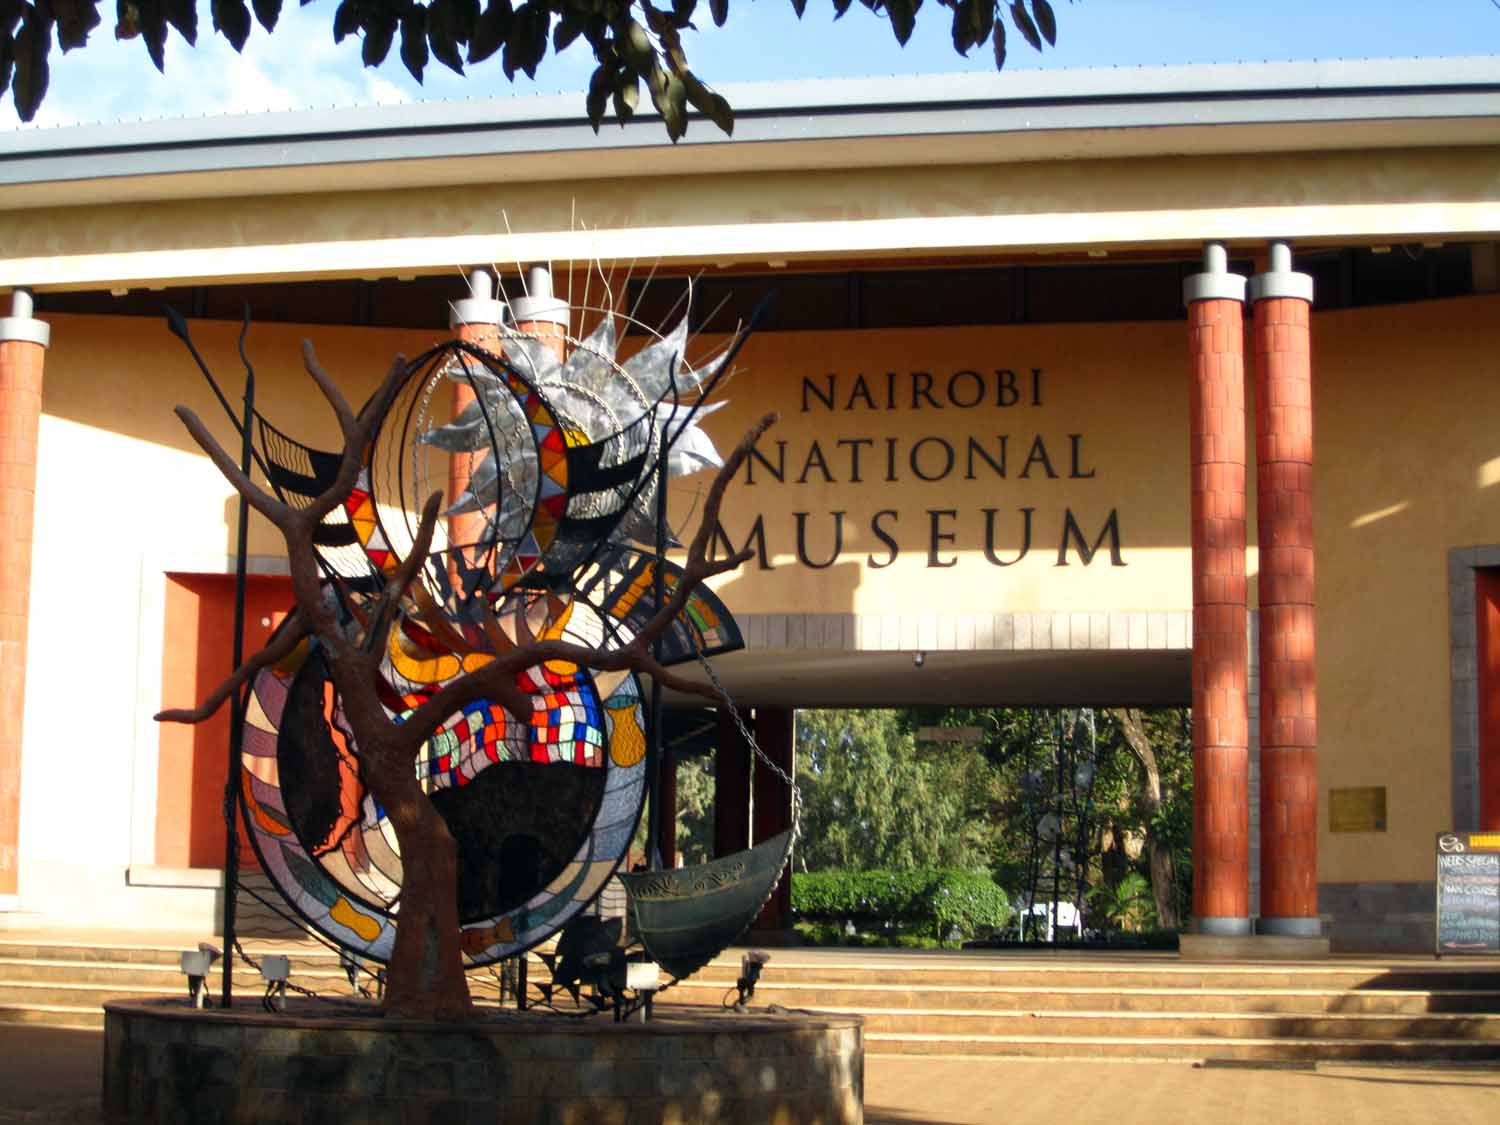 Nairobimuseum3.jpg